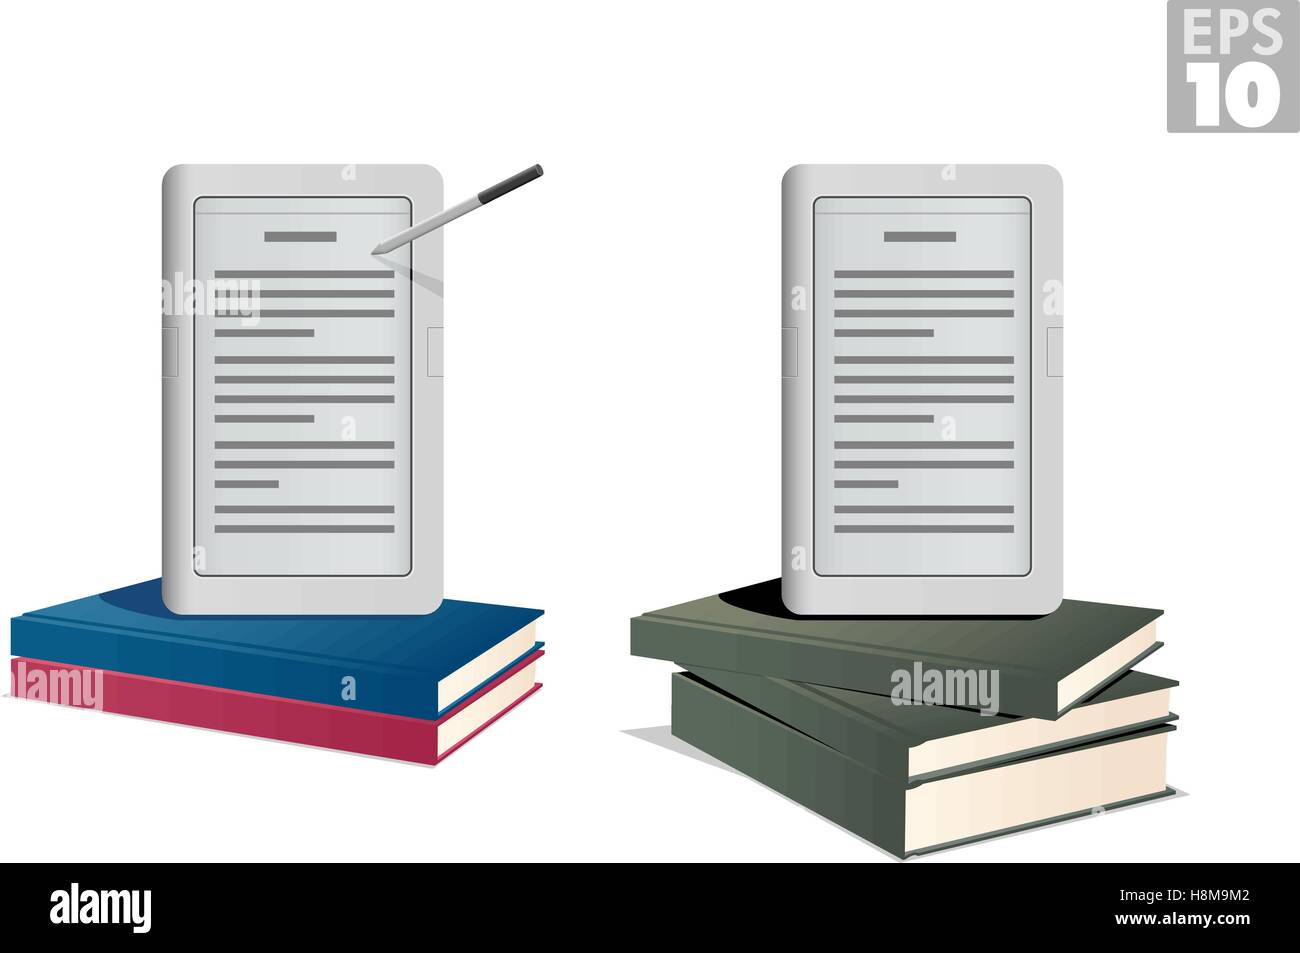 Ebook-Reader auf einem Stapel von Hardcover-Büchern Stock Vektor